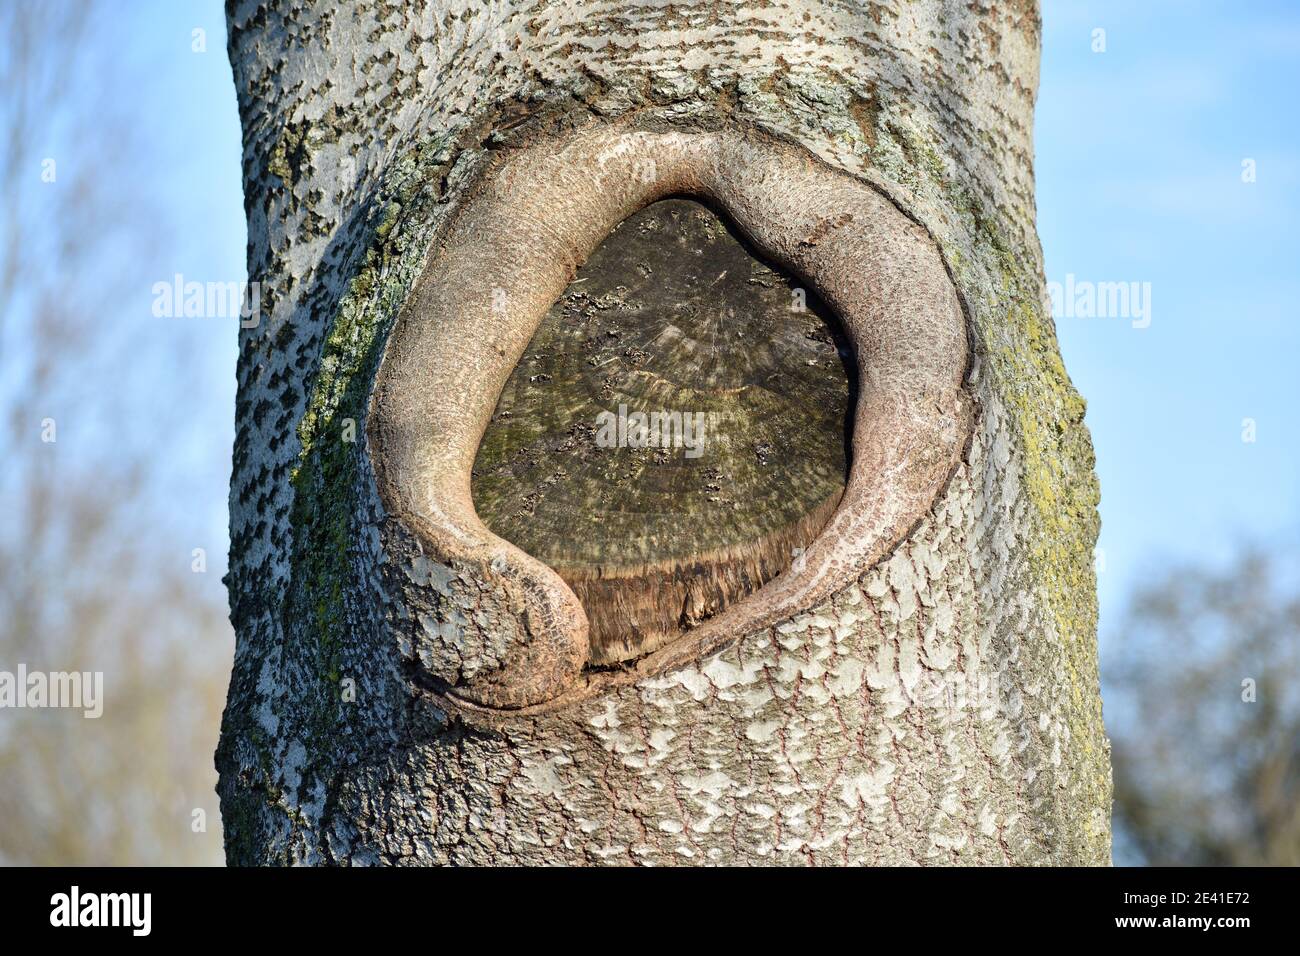 Écorce d'arbre montrant un noeud curieux Banque D'Images